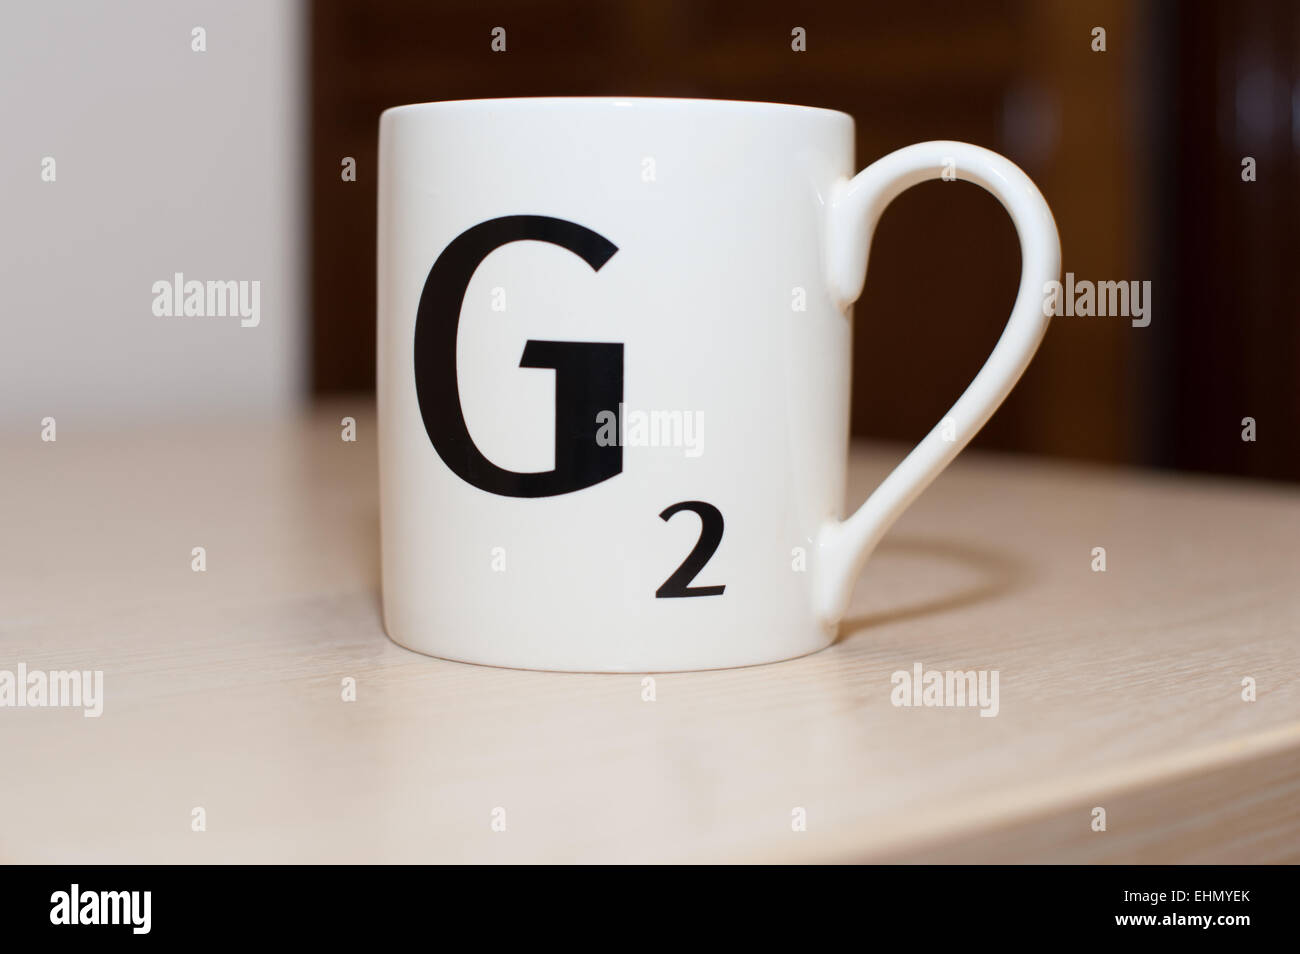 Una lettera di scrabble , un capitale g con due punti su una bianca la tazza di tè o caffè durante una pausa di lavoro su un tavolo Foto Stock